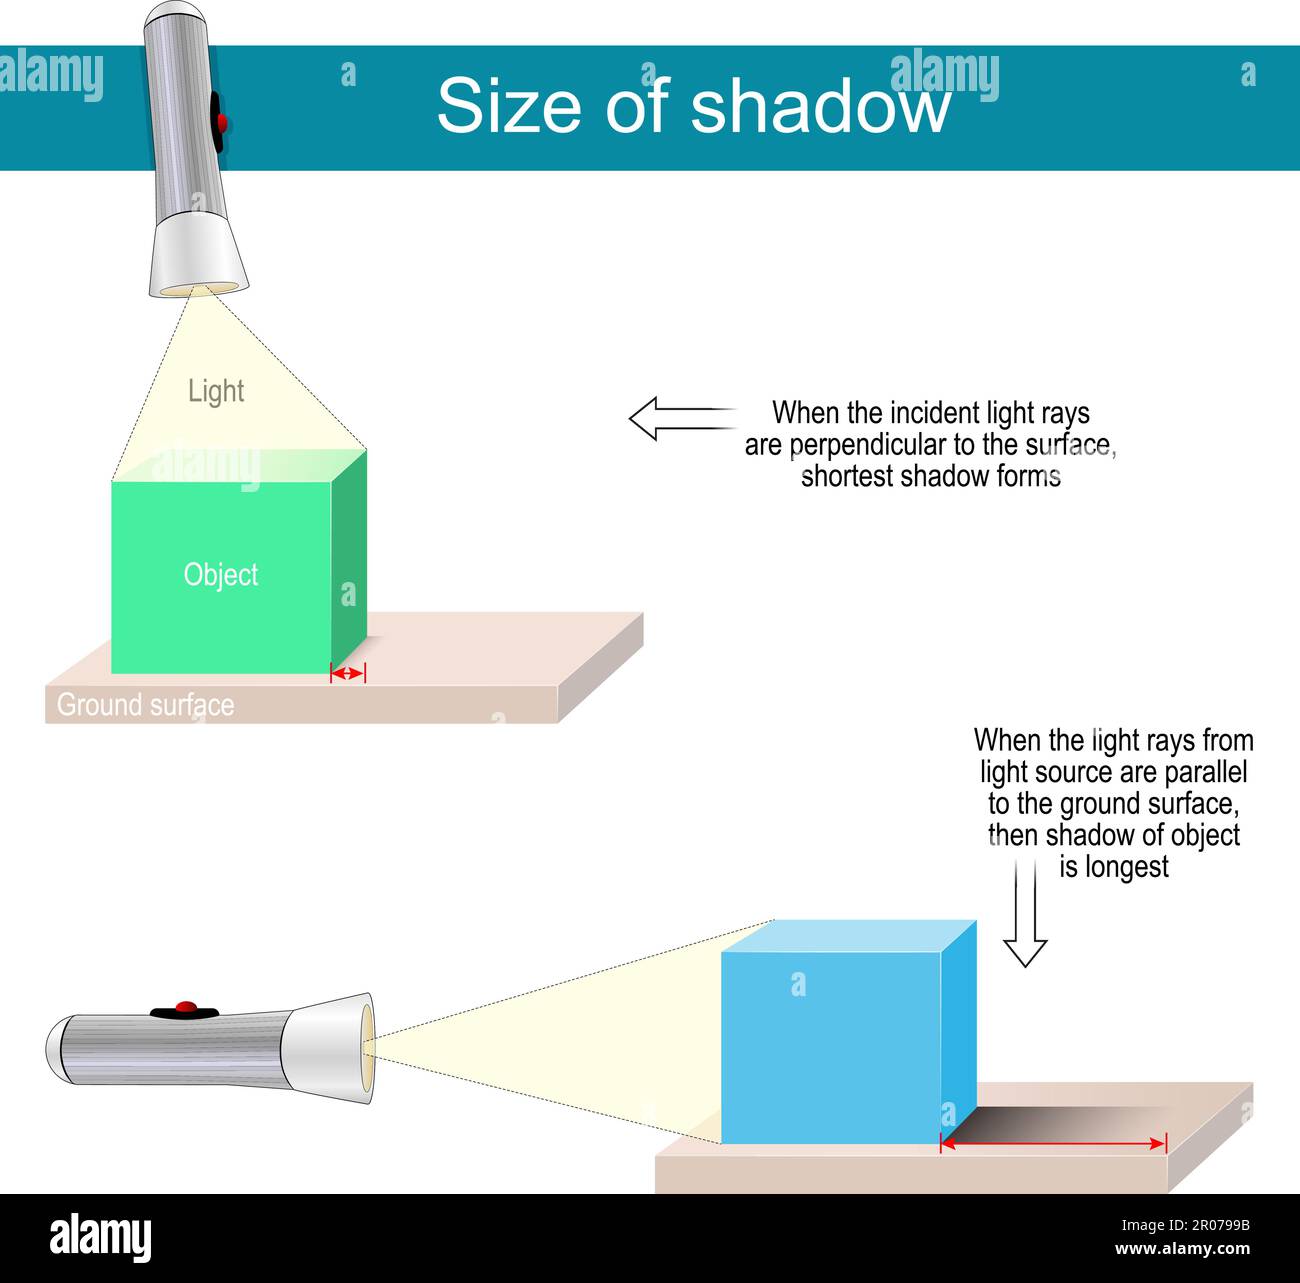 Dimensione dell'ombra. Sperimenta con la torcia e la scatola. Quando i raggi luminosi incidenti sono perpendicolari alla superficie, si forma l'ombra più corta Illustrazione Vettoriale